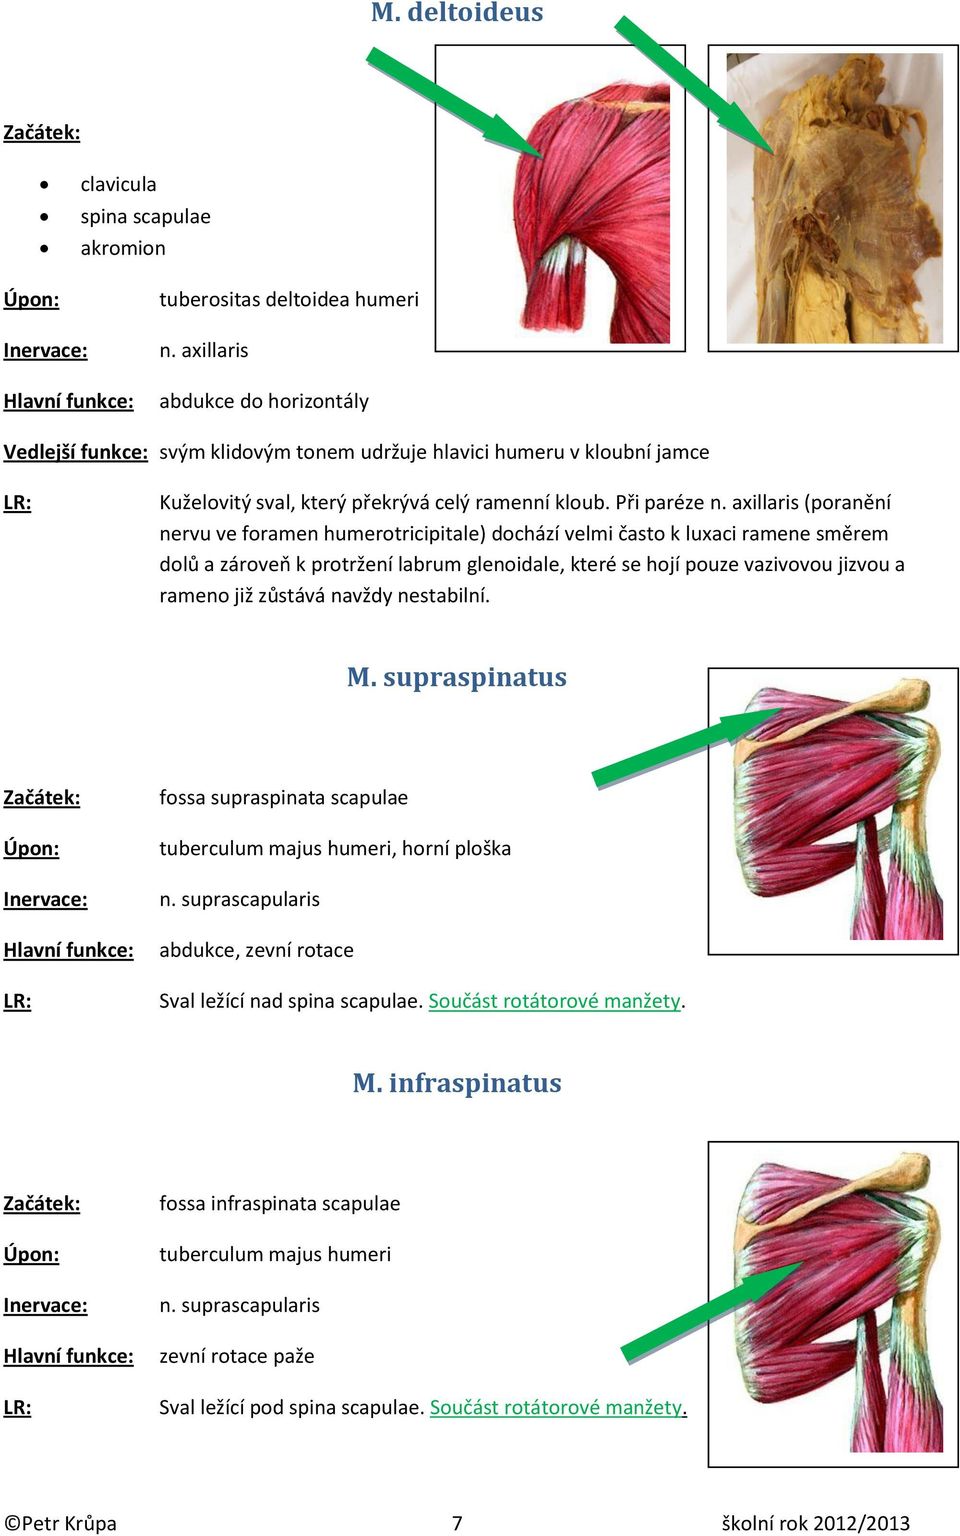 axillaris (poranění nervu ve foramen humerotricipitale) dochází velmi často k luxaci ramene směrem dolů a zároveň k protržení labrum glenoidale, které se hojí pouze vazivovou jizvou a rameno již